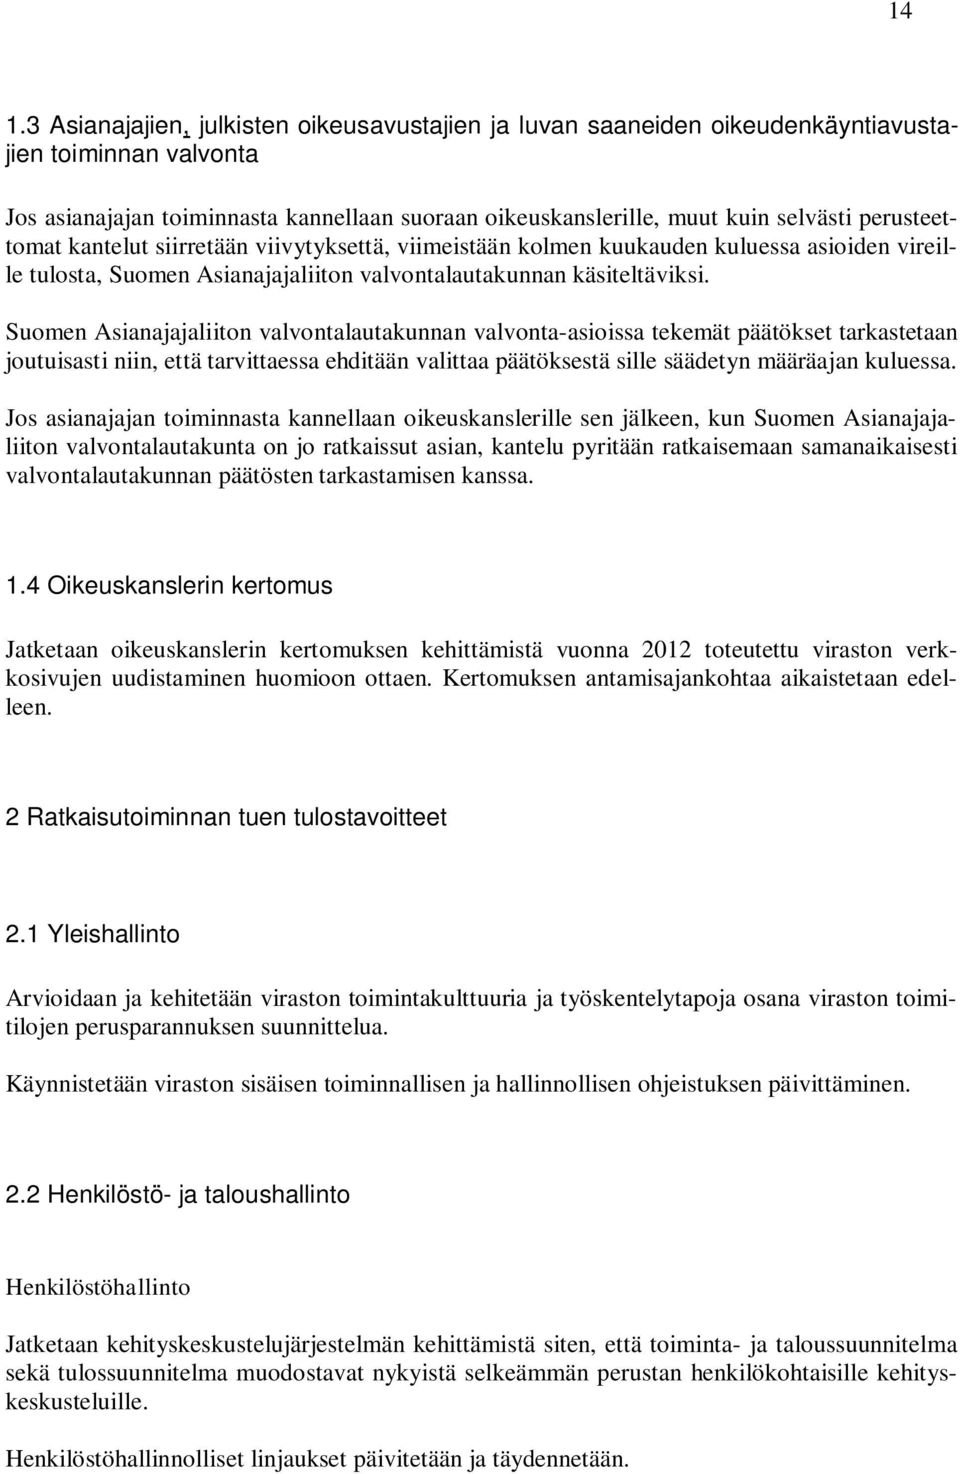 Suomen Asianajajaliiton valvontalautakunnan valvonta-asioissa tekemät päätökset tarkastetaan joutuisasti niin, että tarvittaessa ehditään valittaa päätöksestä sille säädetyn määräajan kuluessa.